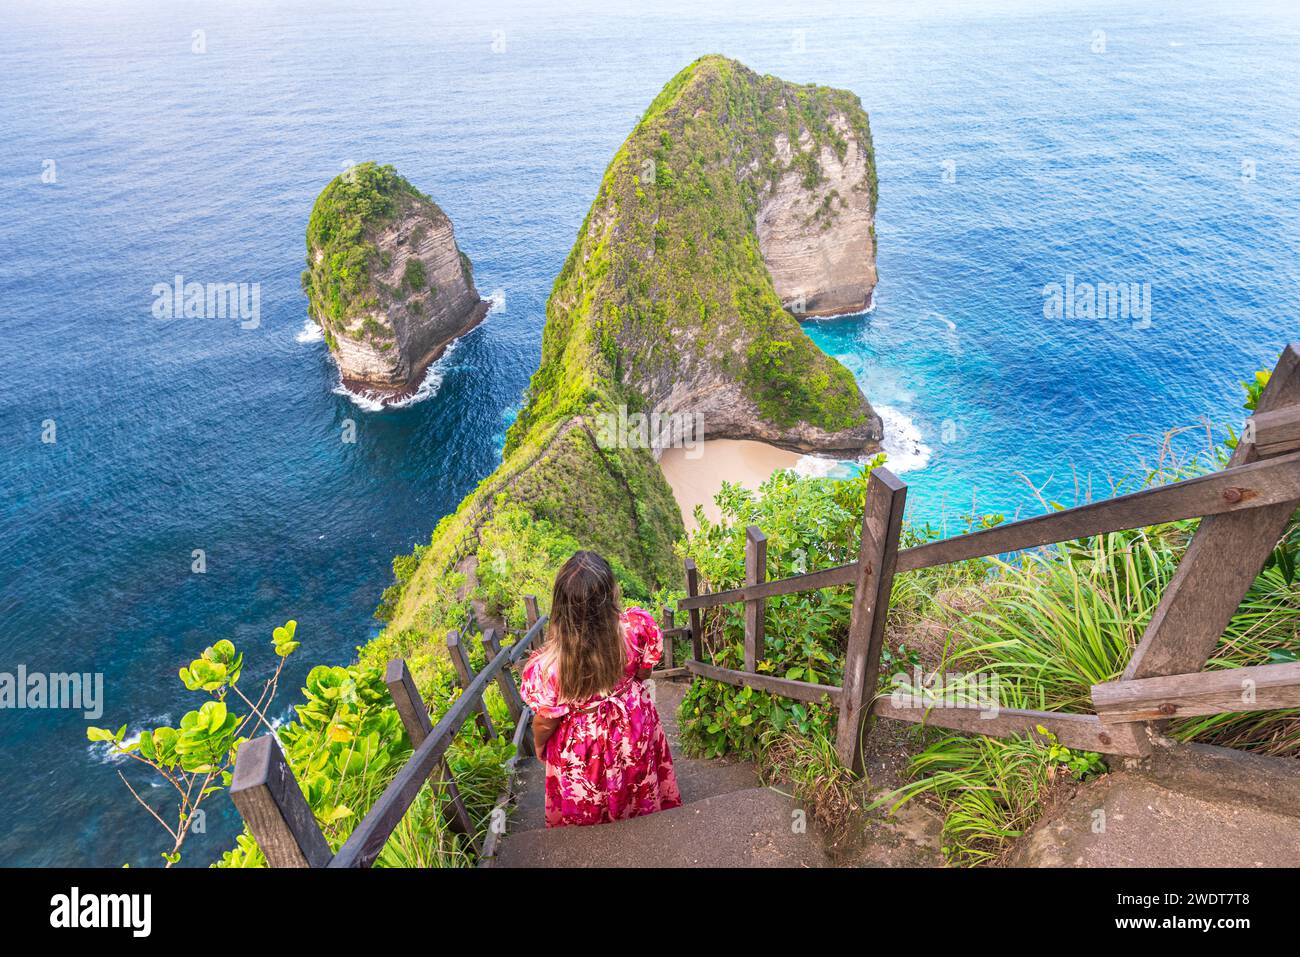 Rückansicht einer Frau, die die Klippen von T-Rex am Kelingking Beach, Nusa Penida, Klungkung Regency, Bali, Indonesien, bewundert. Südostasien, Asien Stockfoto